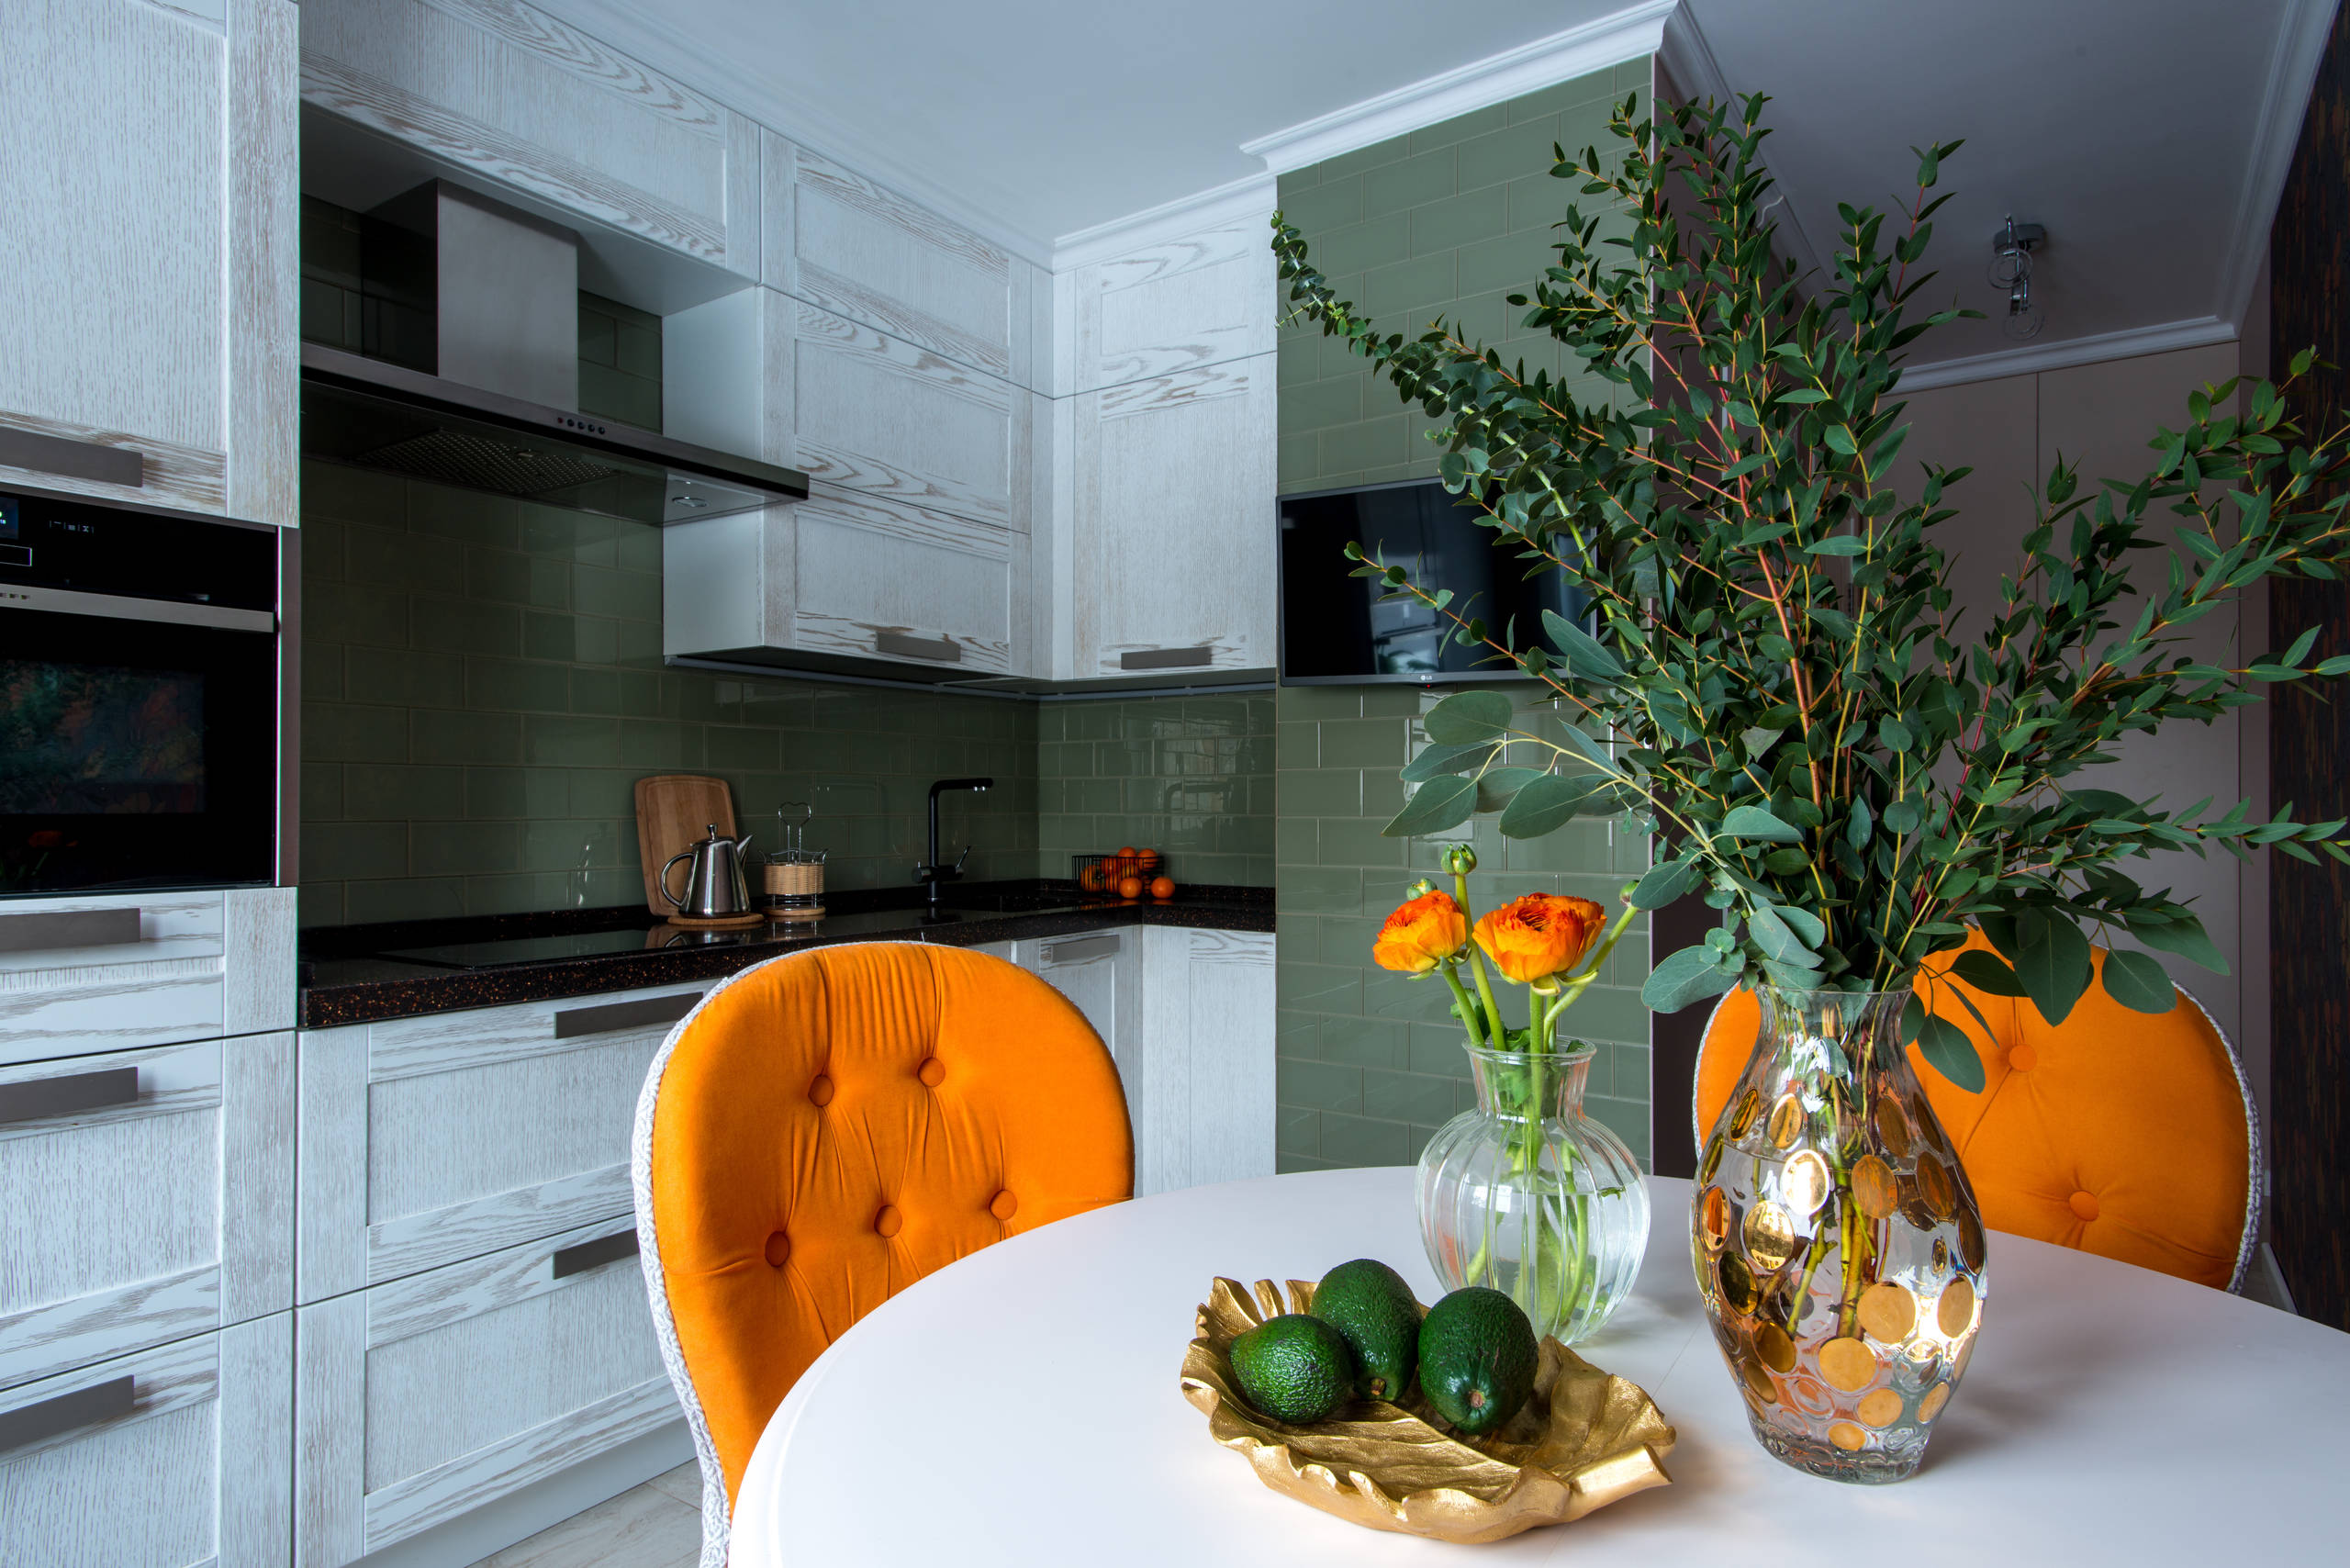 Кухня 12 кв. м. — дизайн, освещение, мебель и украшения. 115 фото оптимальной планировки помещения